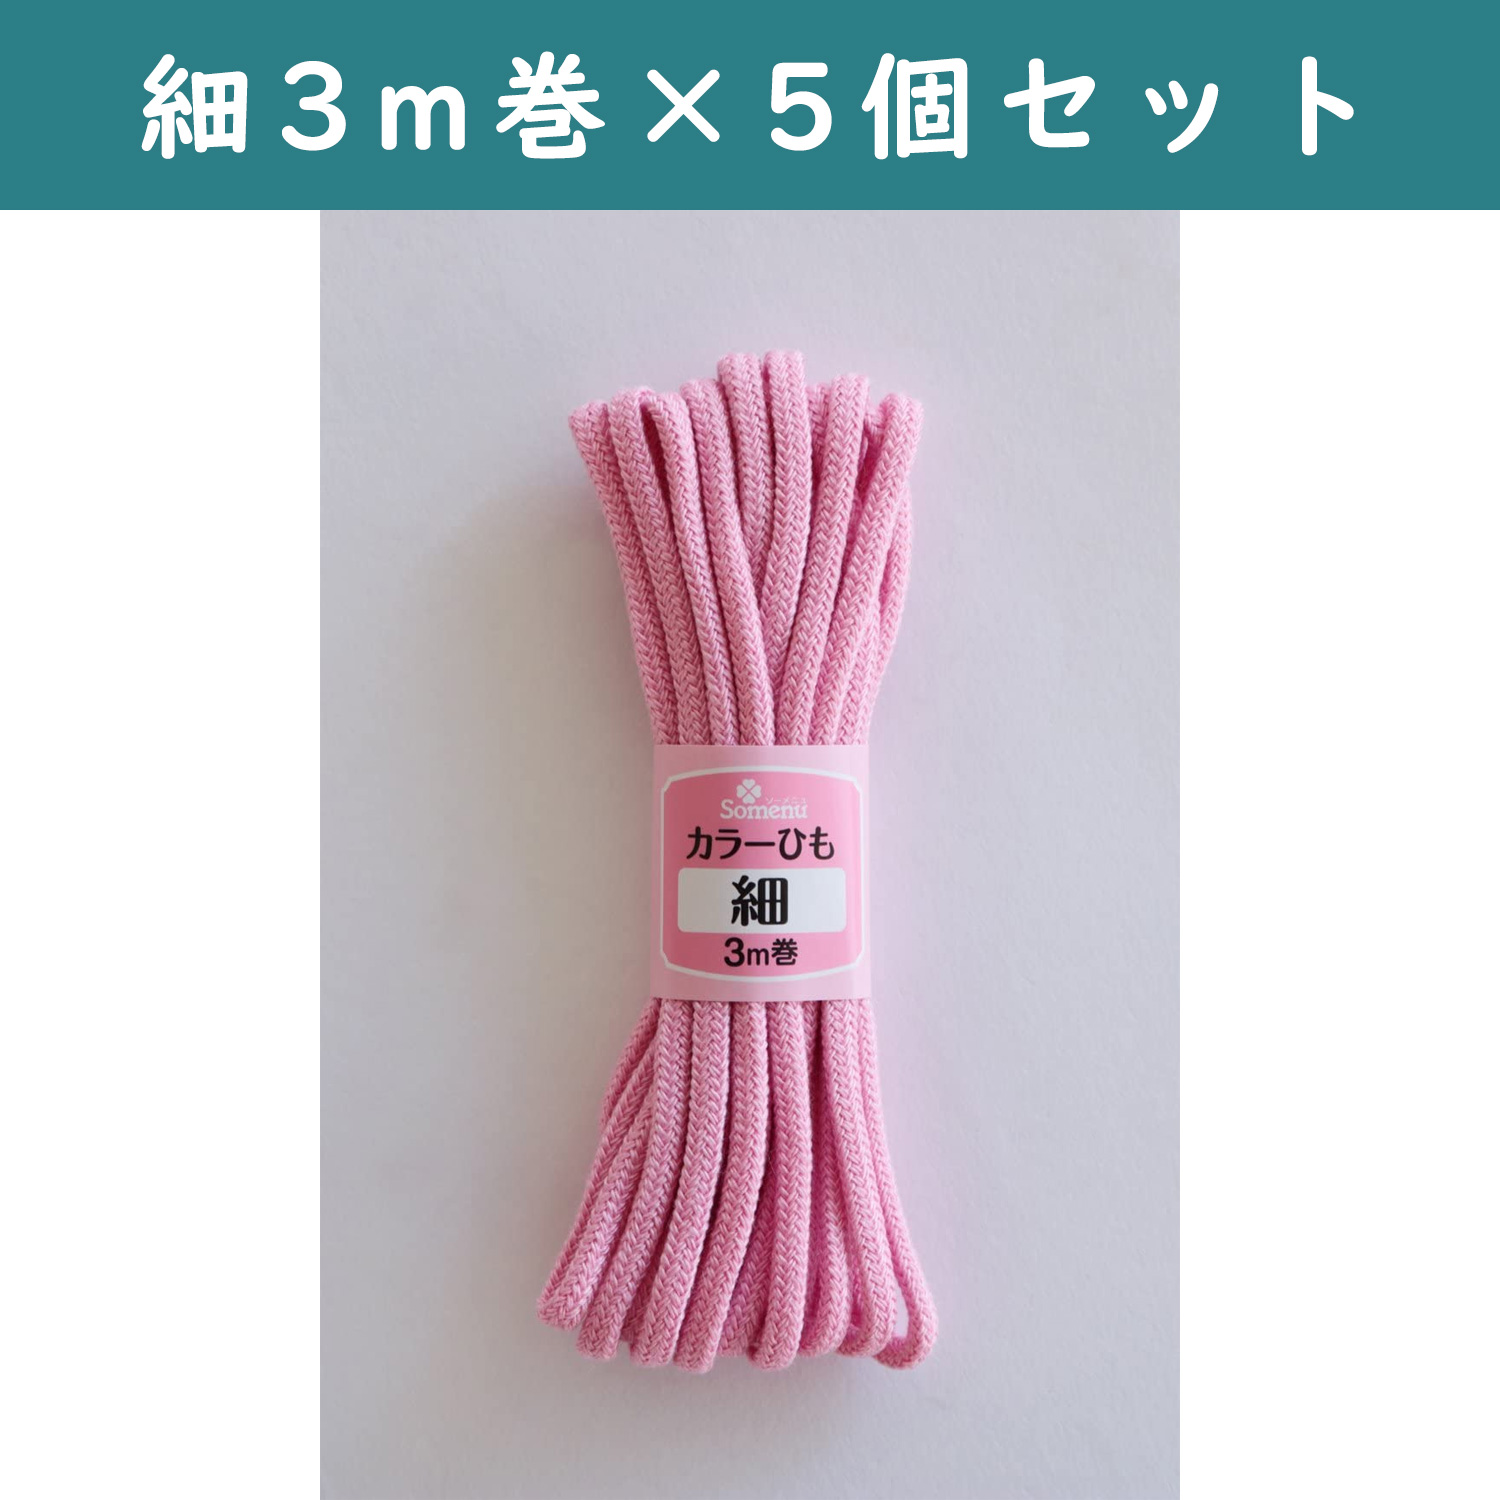 ■【5個】CL26-135-5set カラーひも 細 3m巻 ピンク 5個セット (セット)